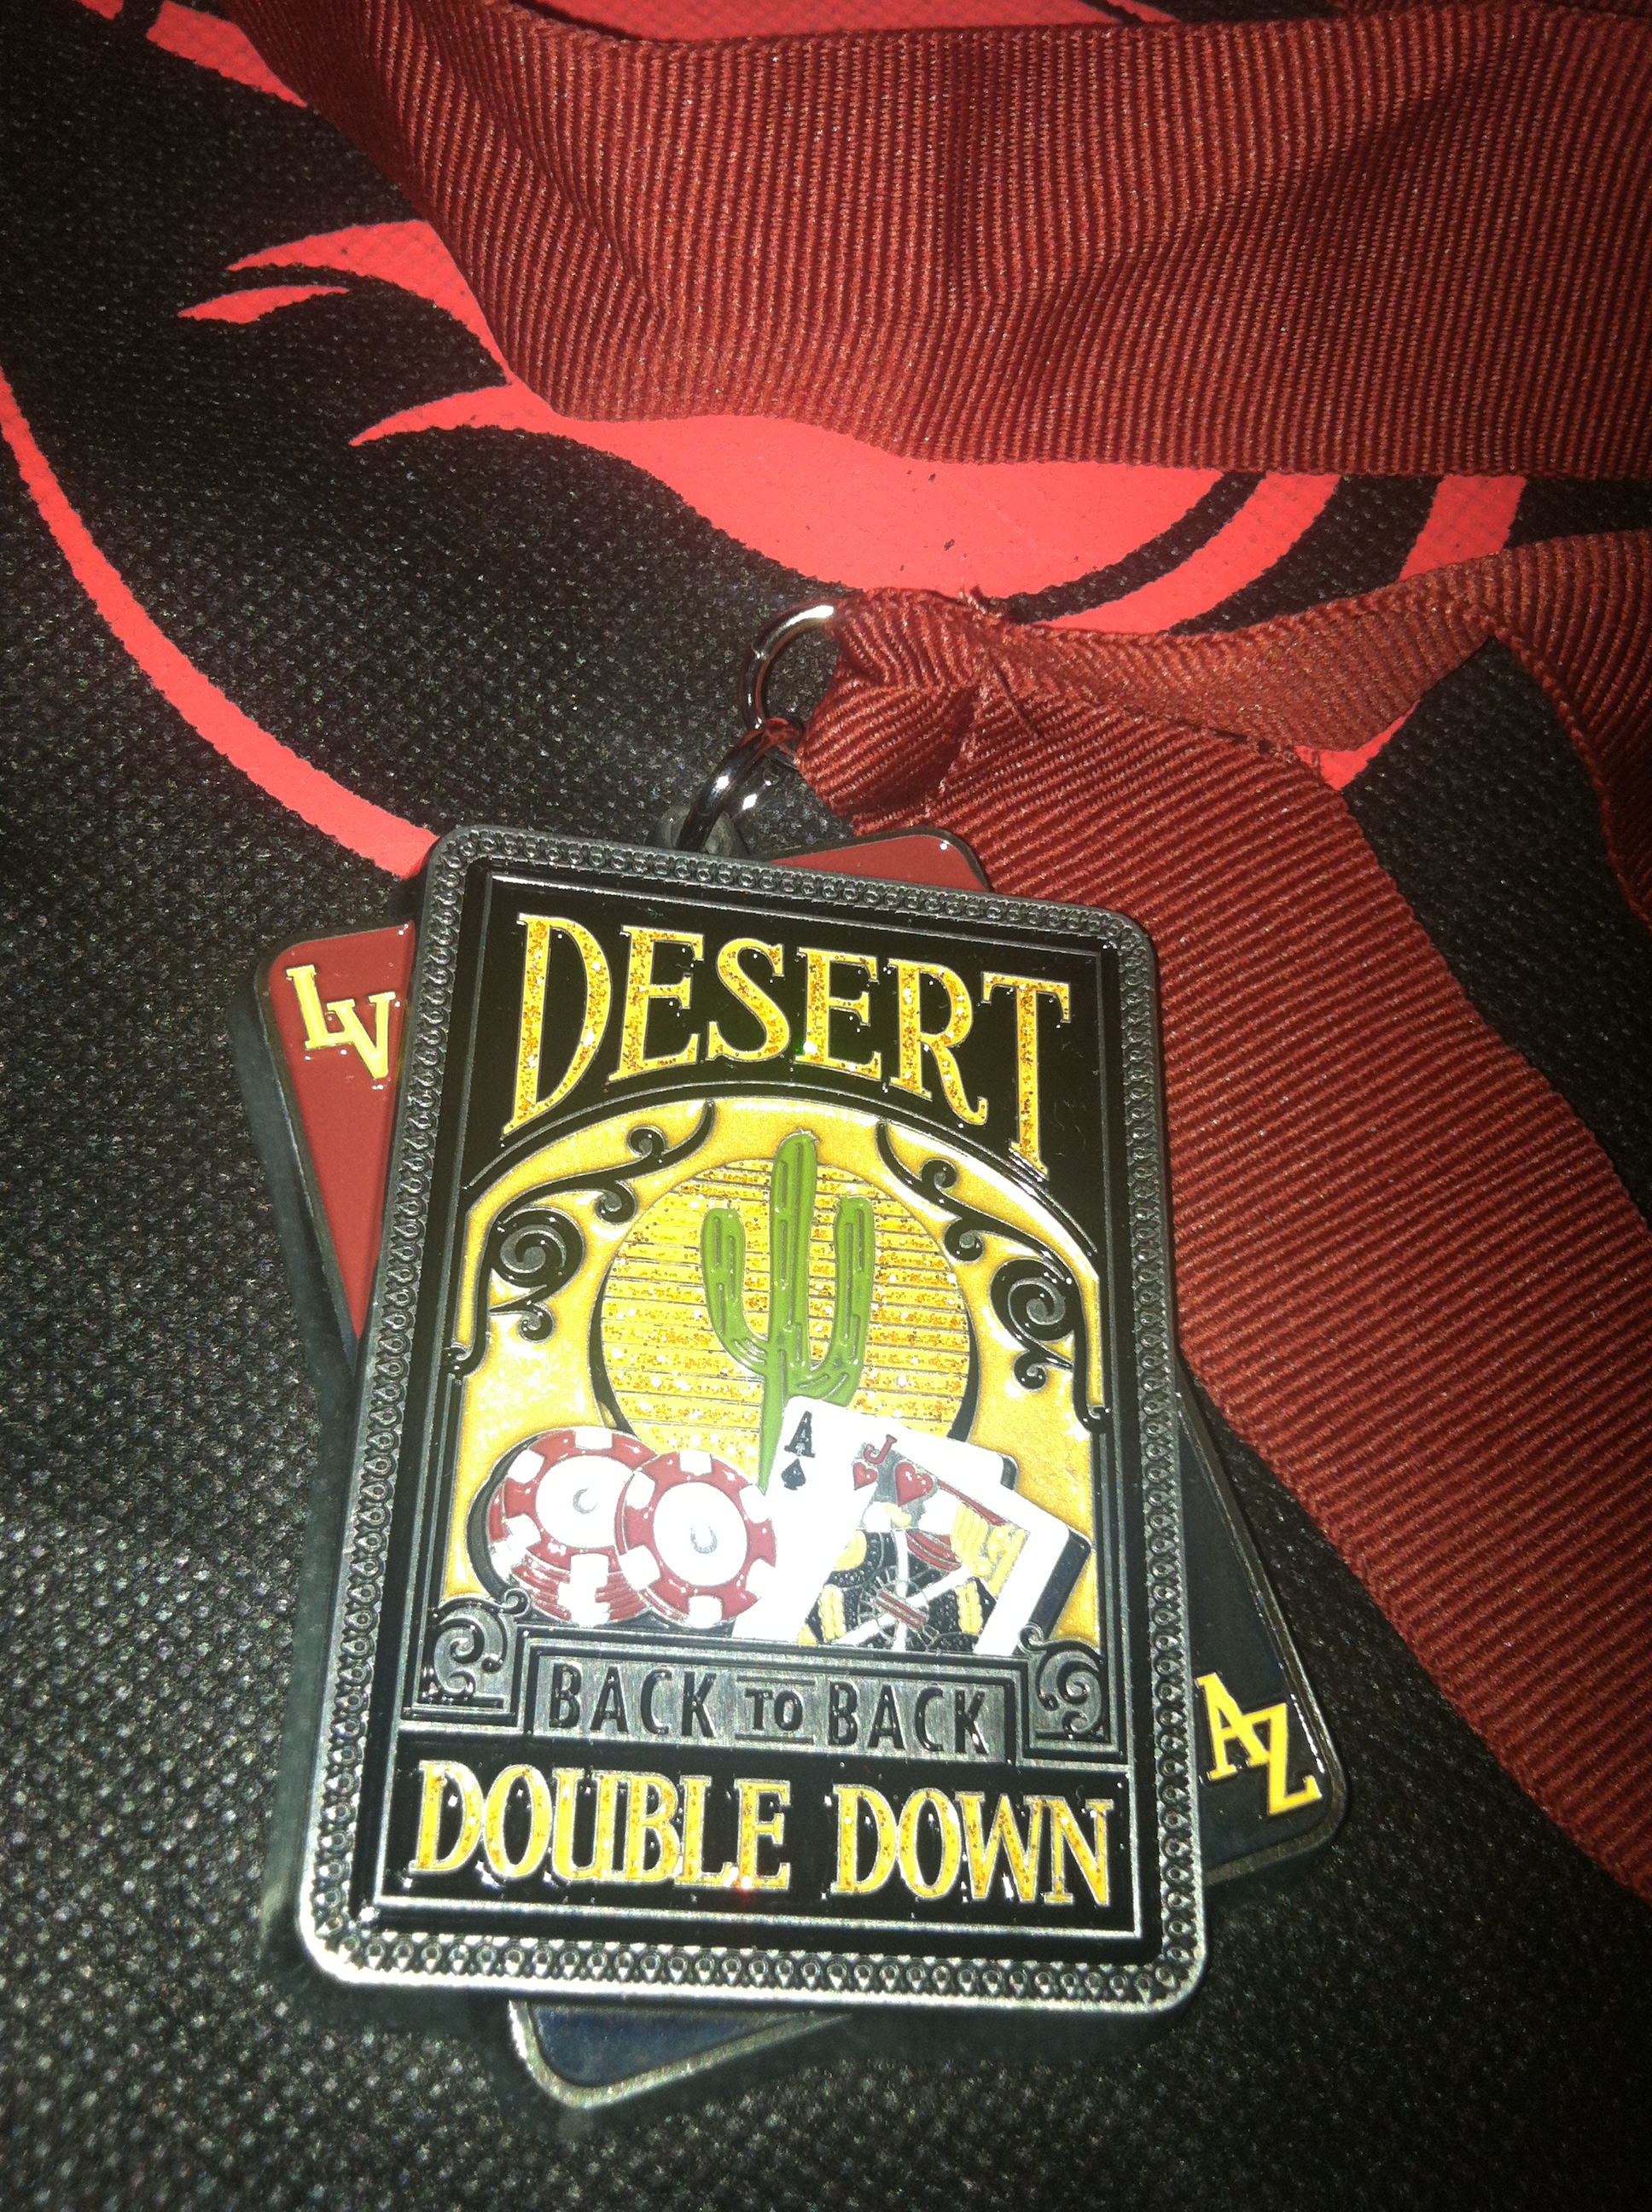 Desert Double down medal